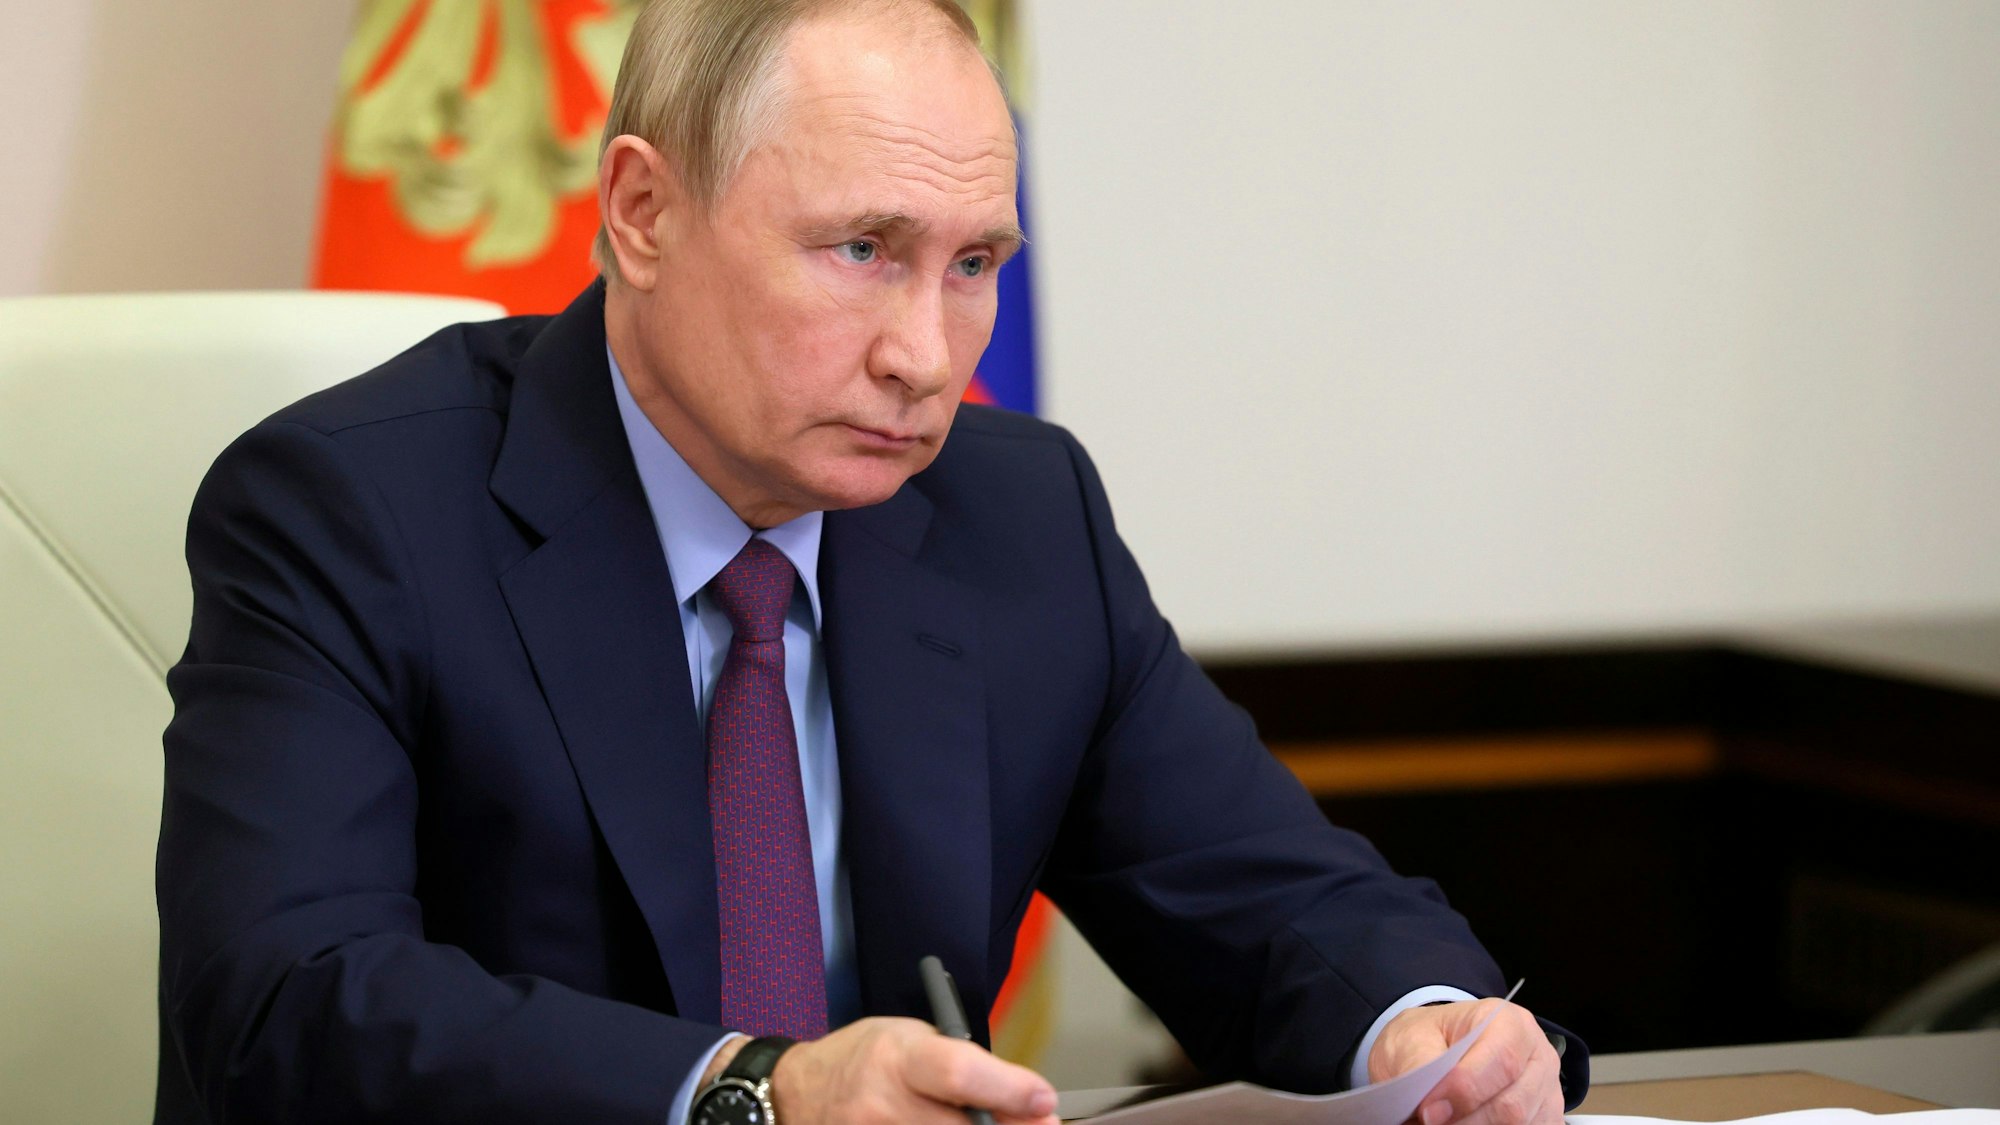 Putin sitzt an einem Tisch und hält ein Blatt Papier.